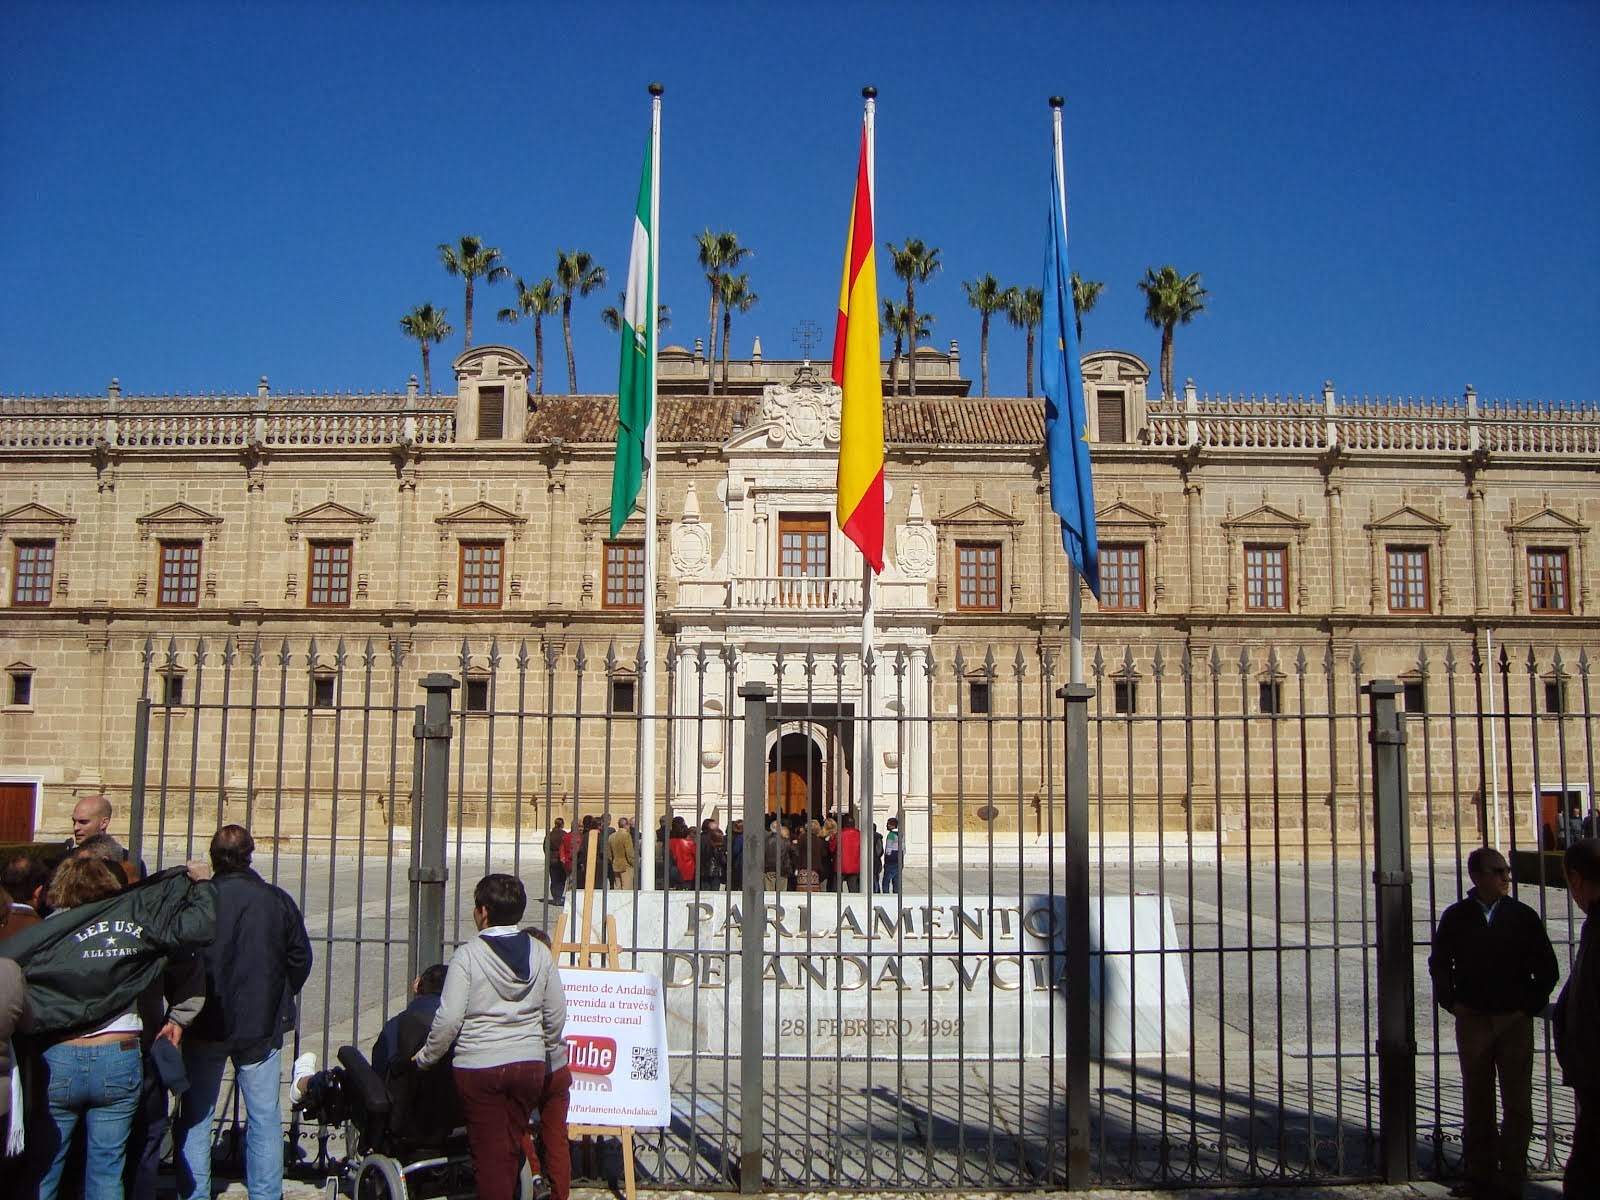 Parlamento de Andalucía